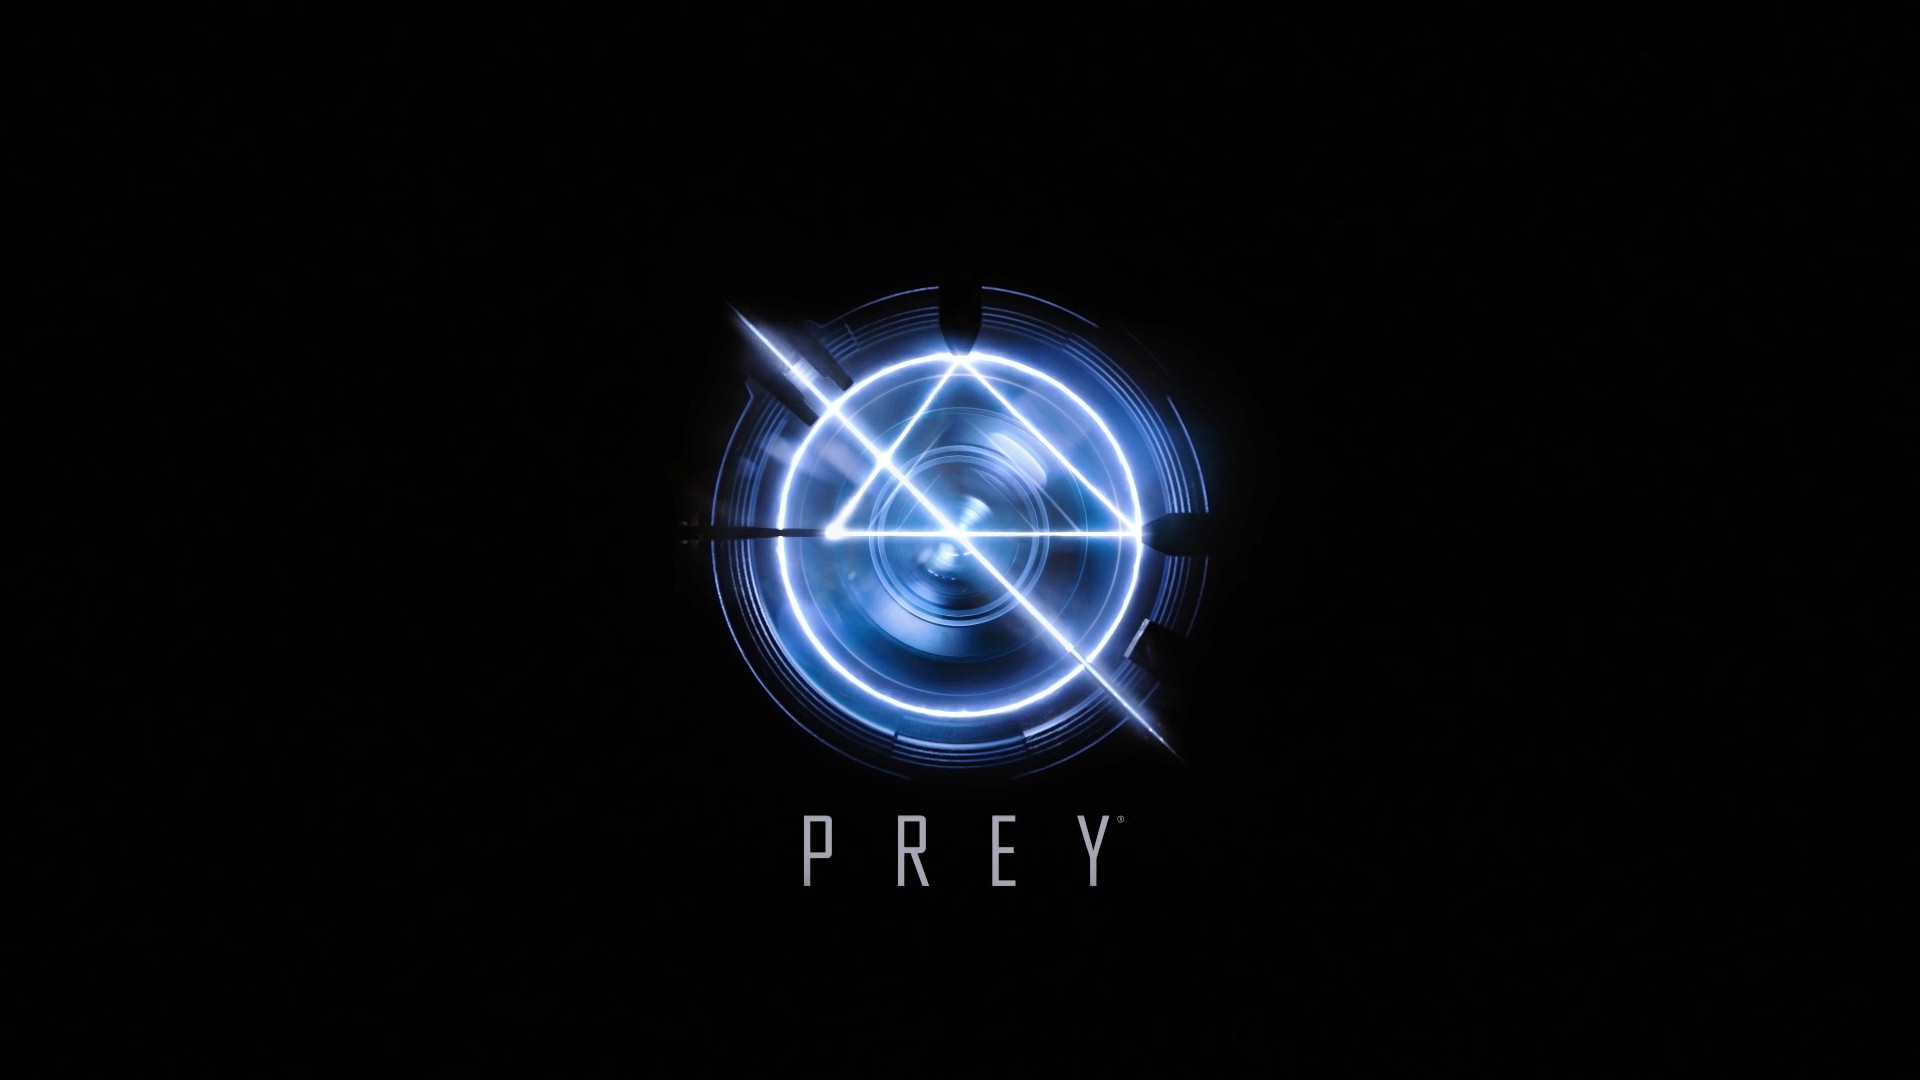 Prey 2017 Logo Wallpaper 